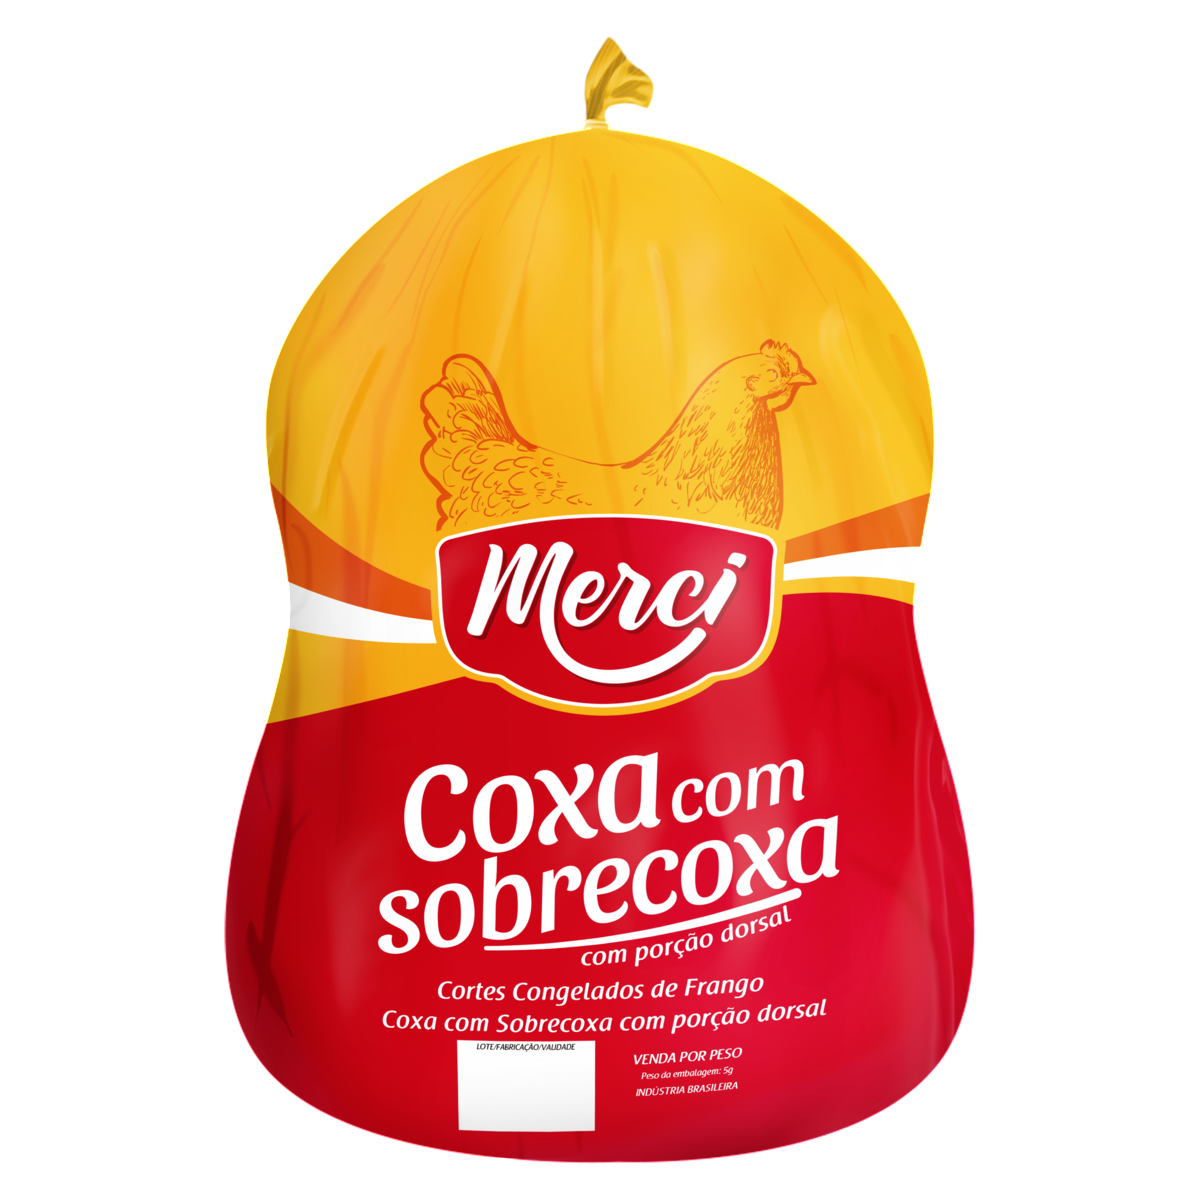 7898249770944 - COXA COM SOBRECOXA DE FRANGO CONGELADA MERCI